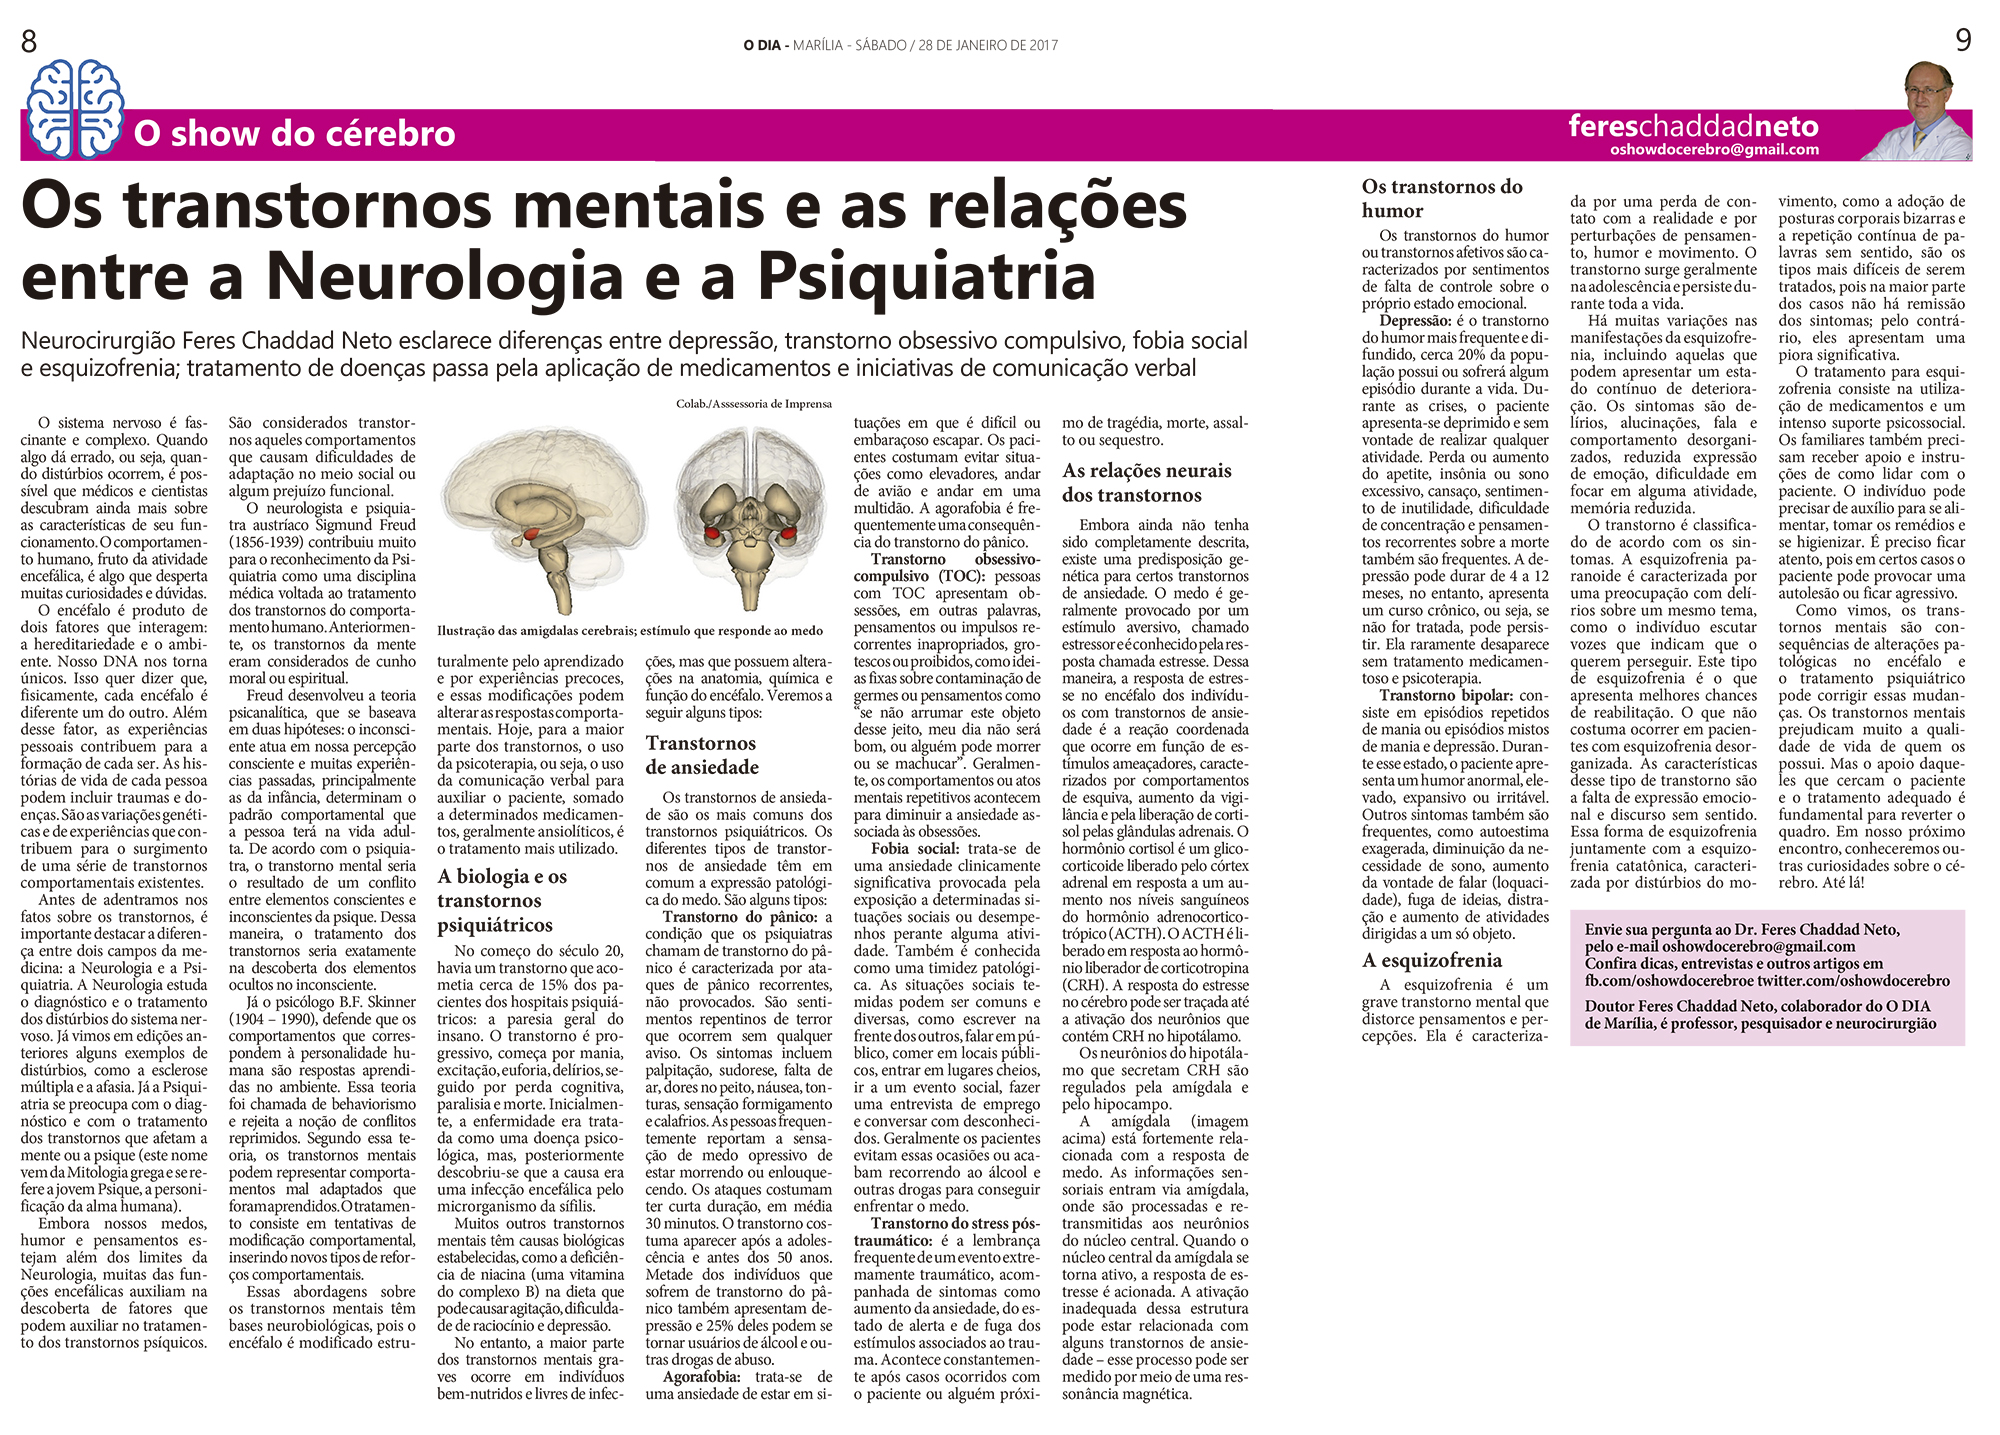 Os transtornos mentais e as relações entre a Neurologia e a Psiquiatria